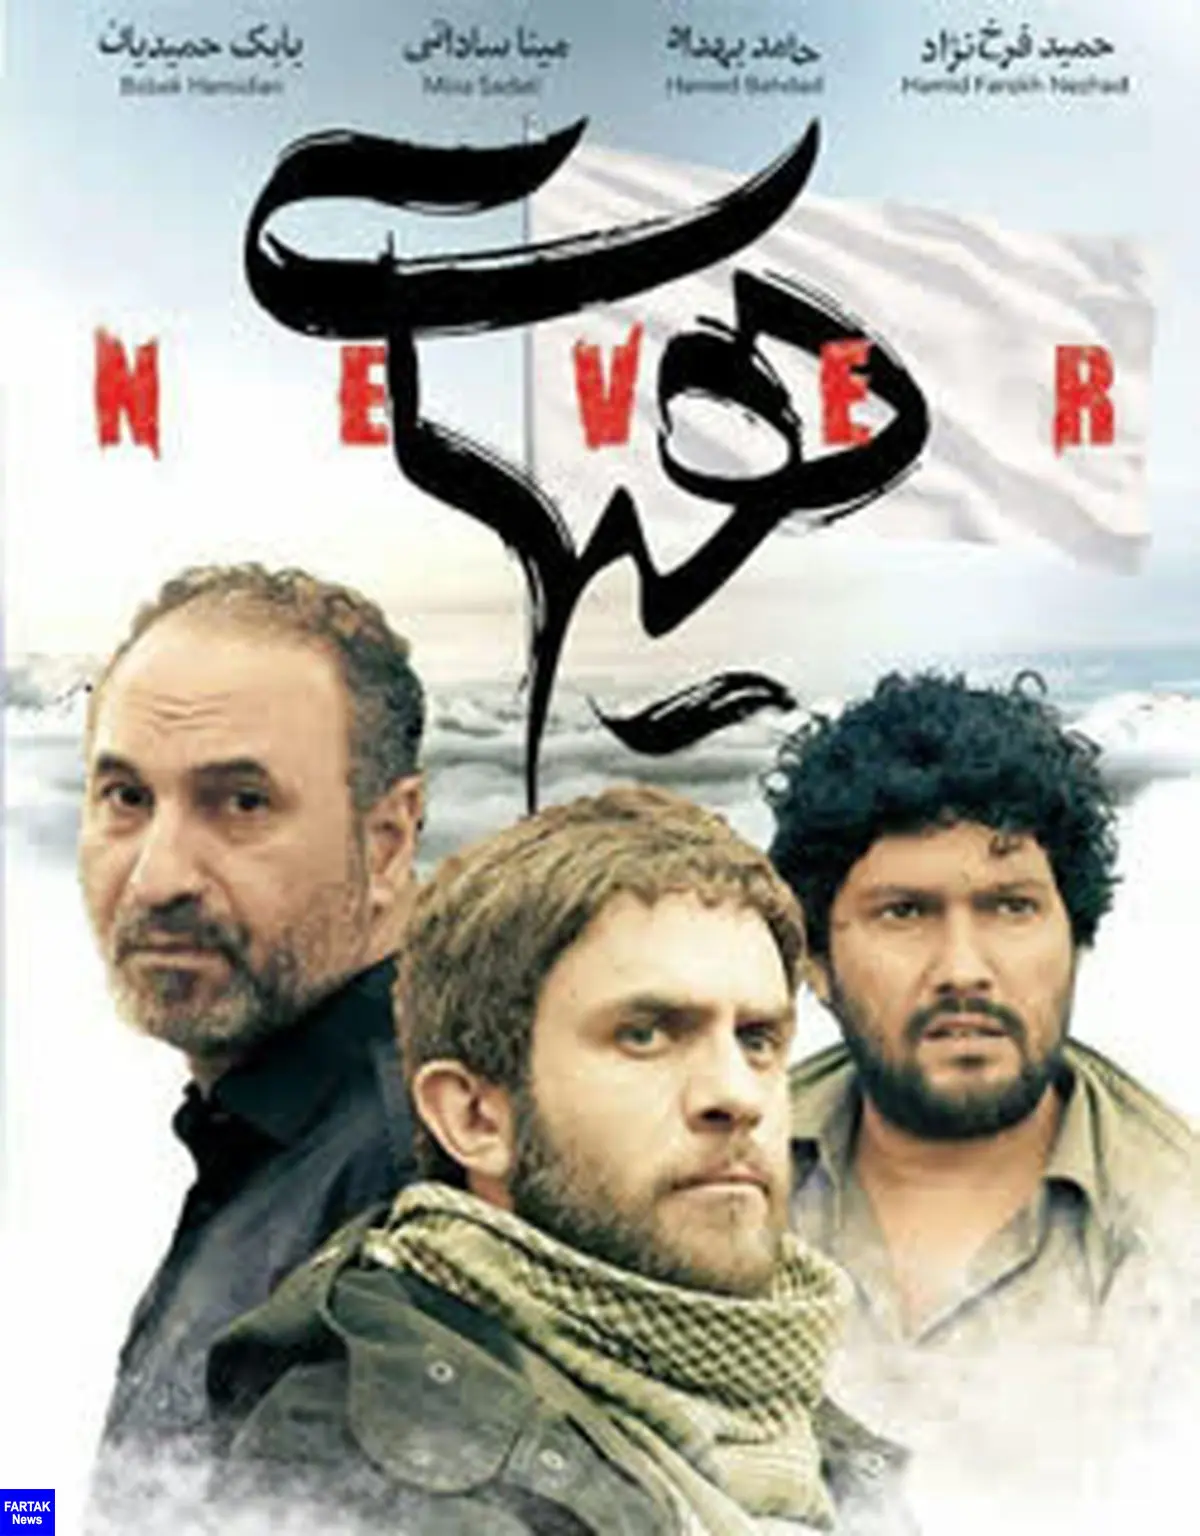 فیلم سینمایی «هیهات» در کانال کردی شبکه جهانی سحر